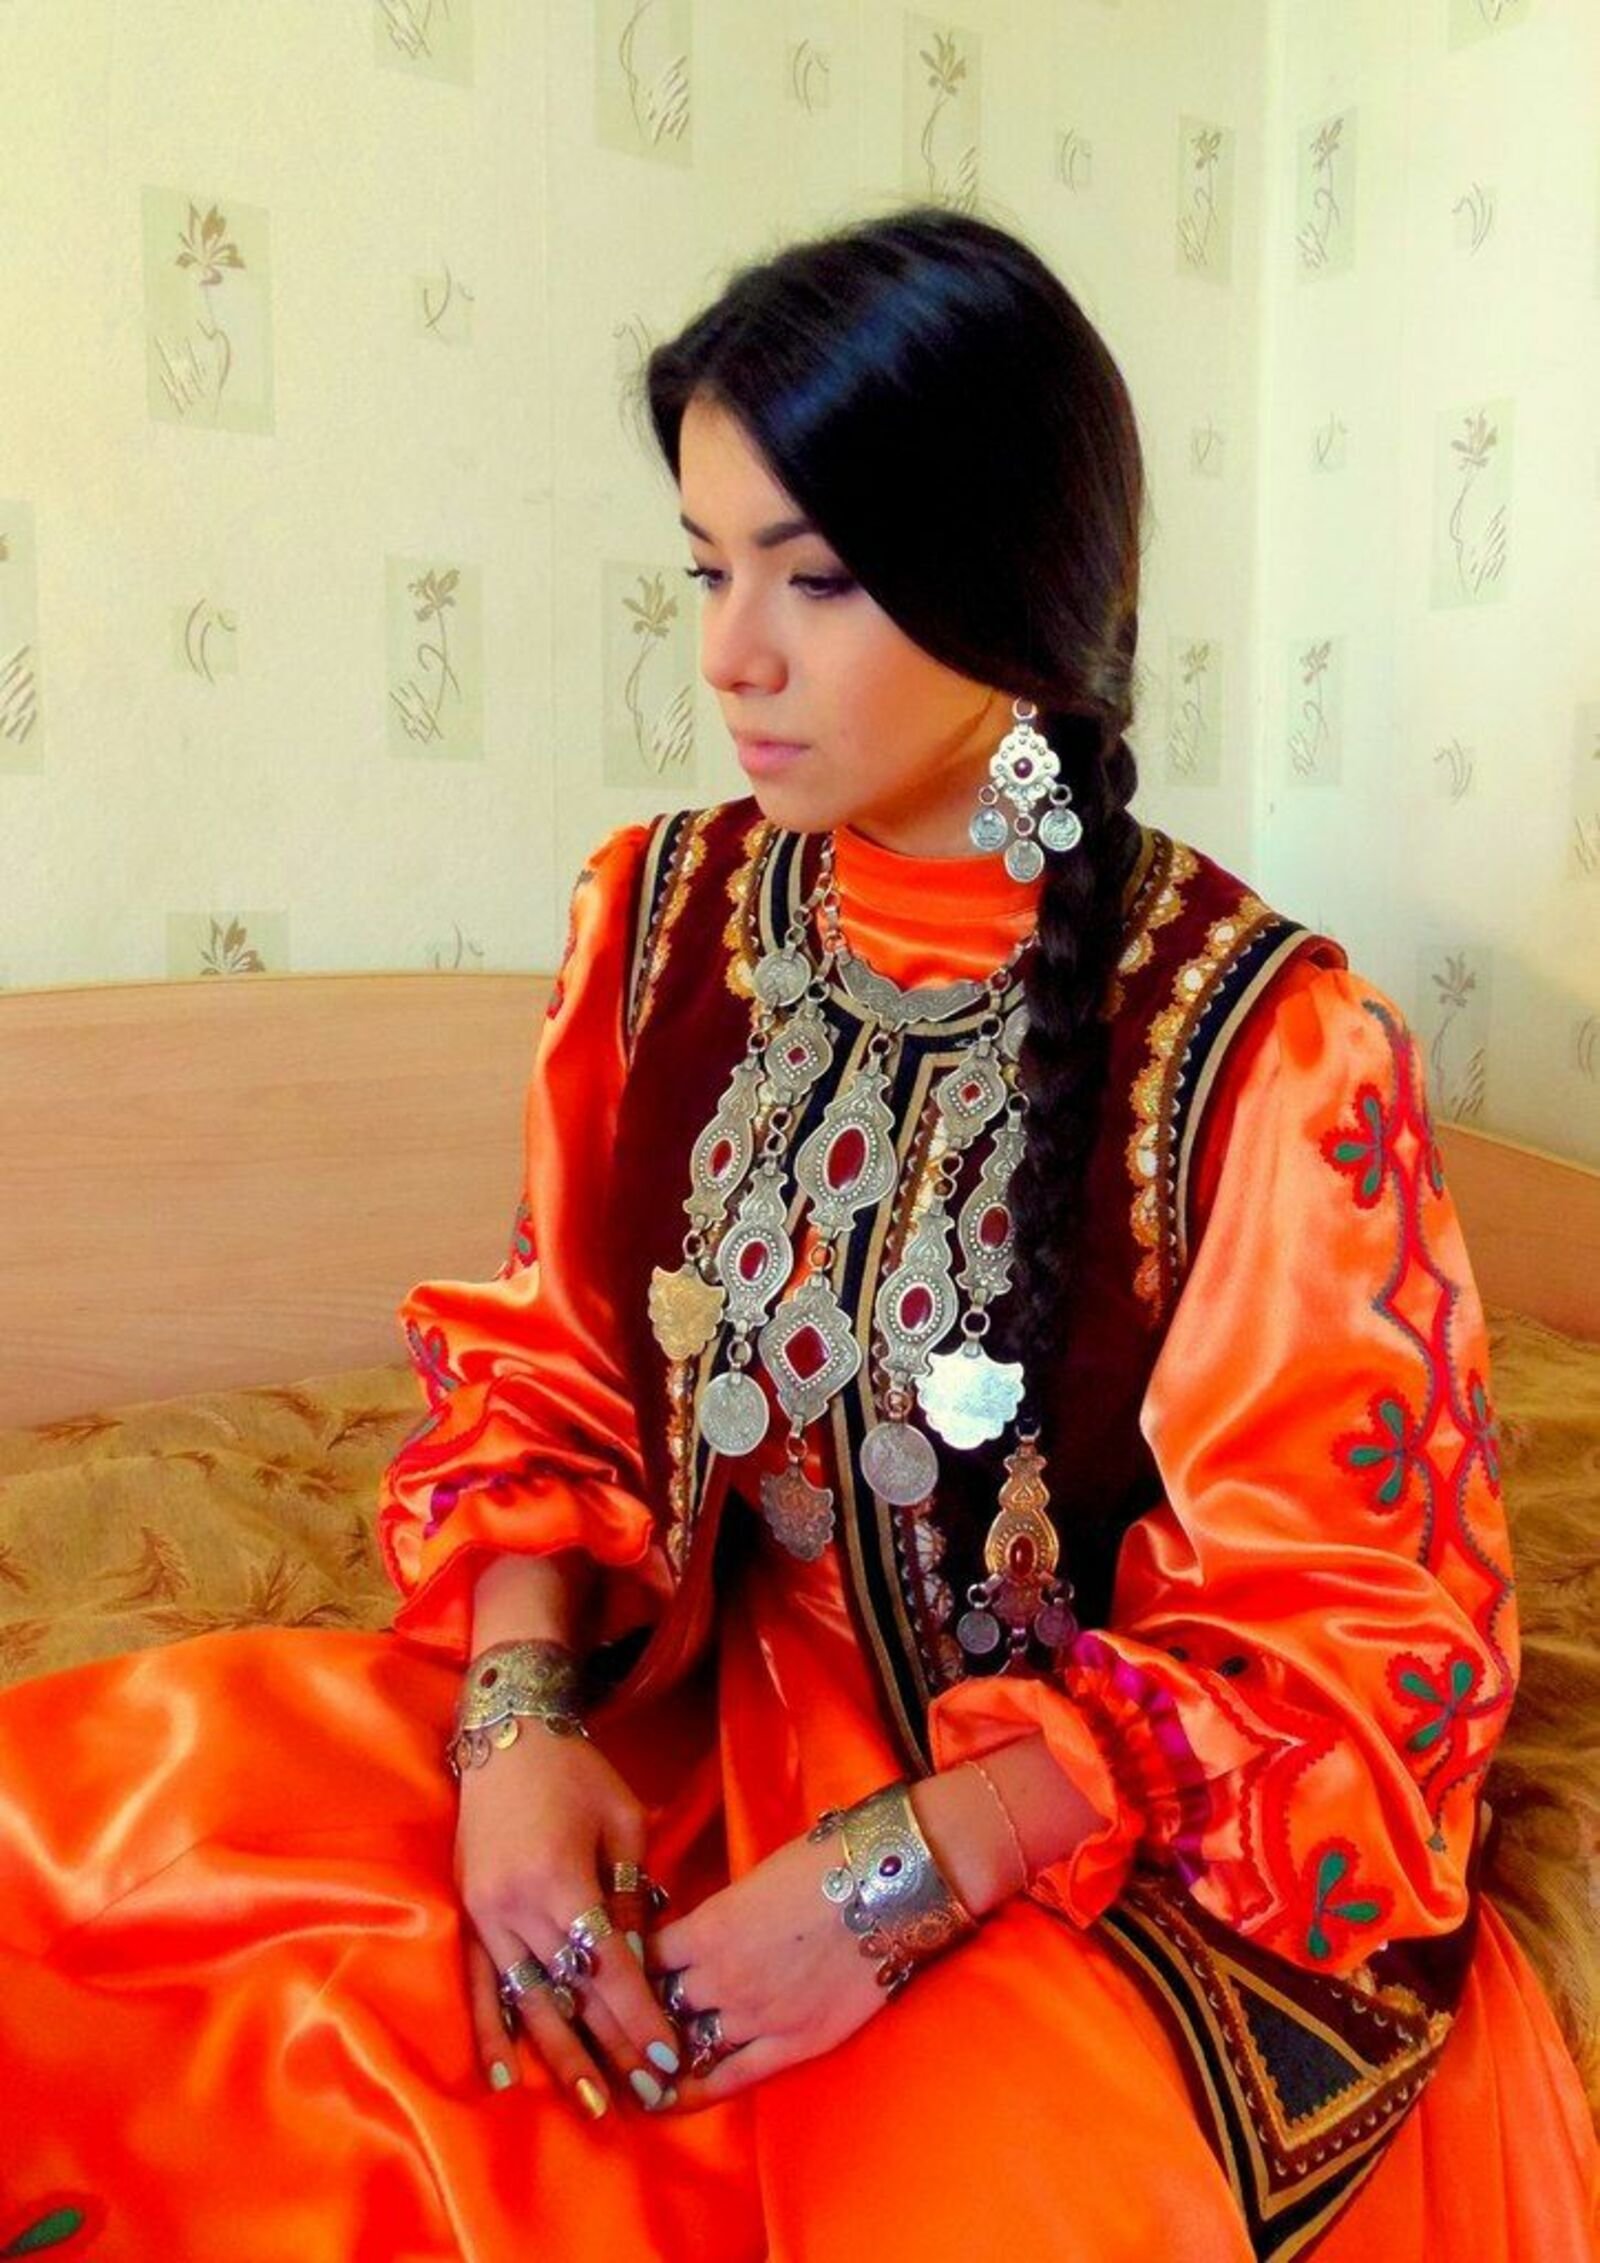 Башкирская девушка в национальном костюме